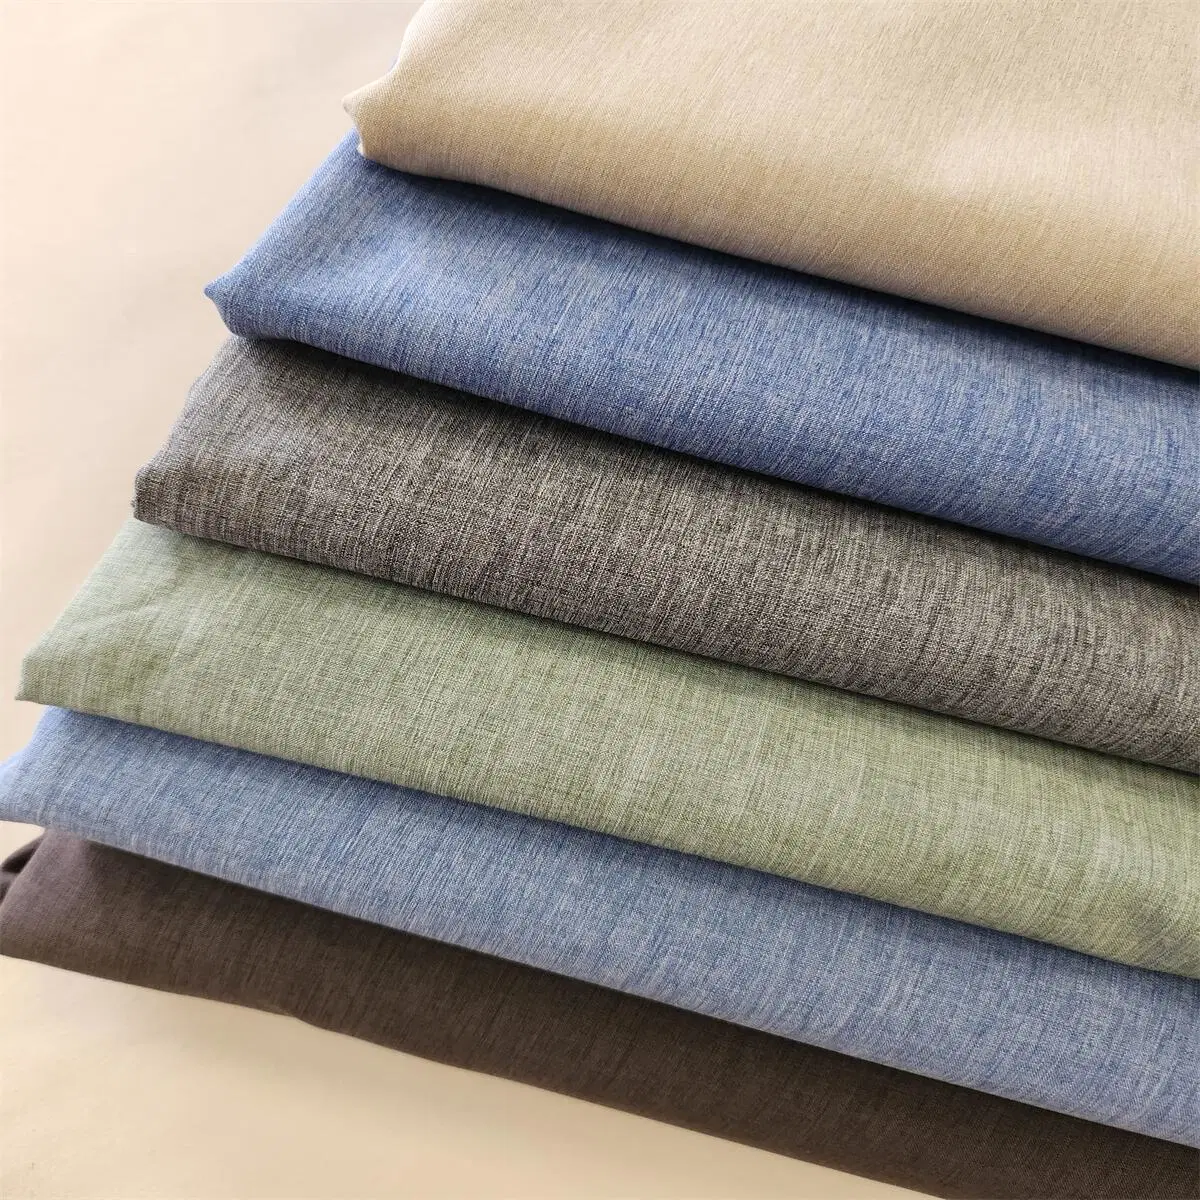 Tissu Softshell imperméable imprimé en polyester/nylon 4 voies extensible/spandex pour vêtements de sport d'extérieur, manteaux d'hiver, vestes en duvet et vêtements.